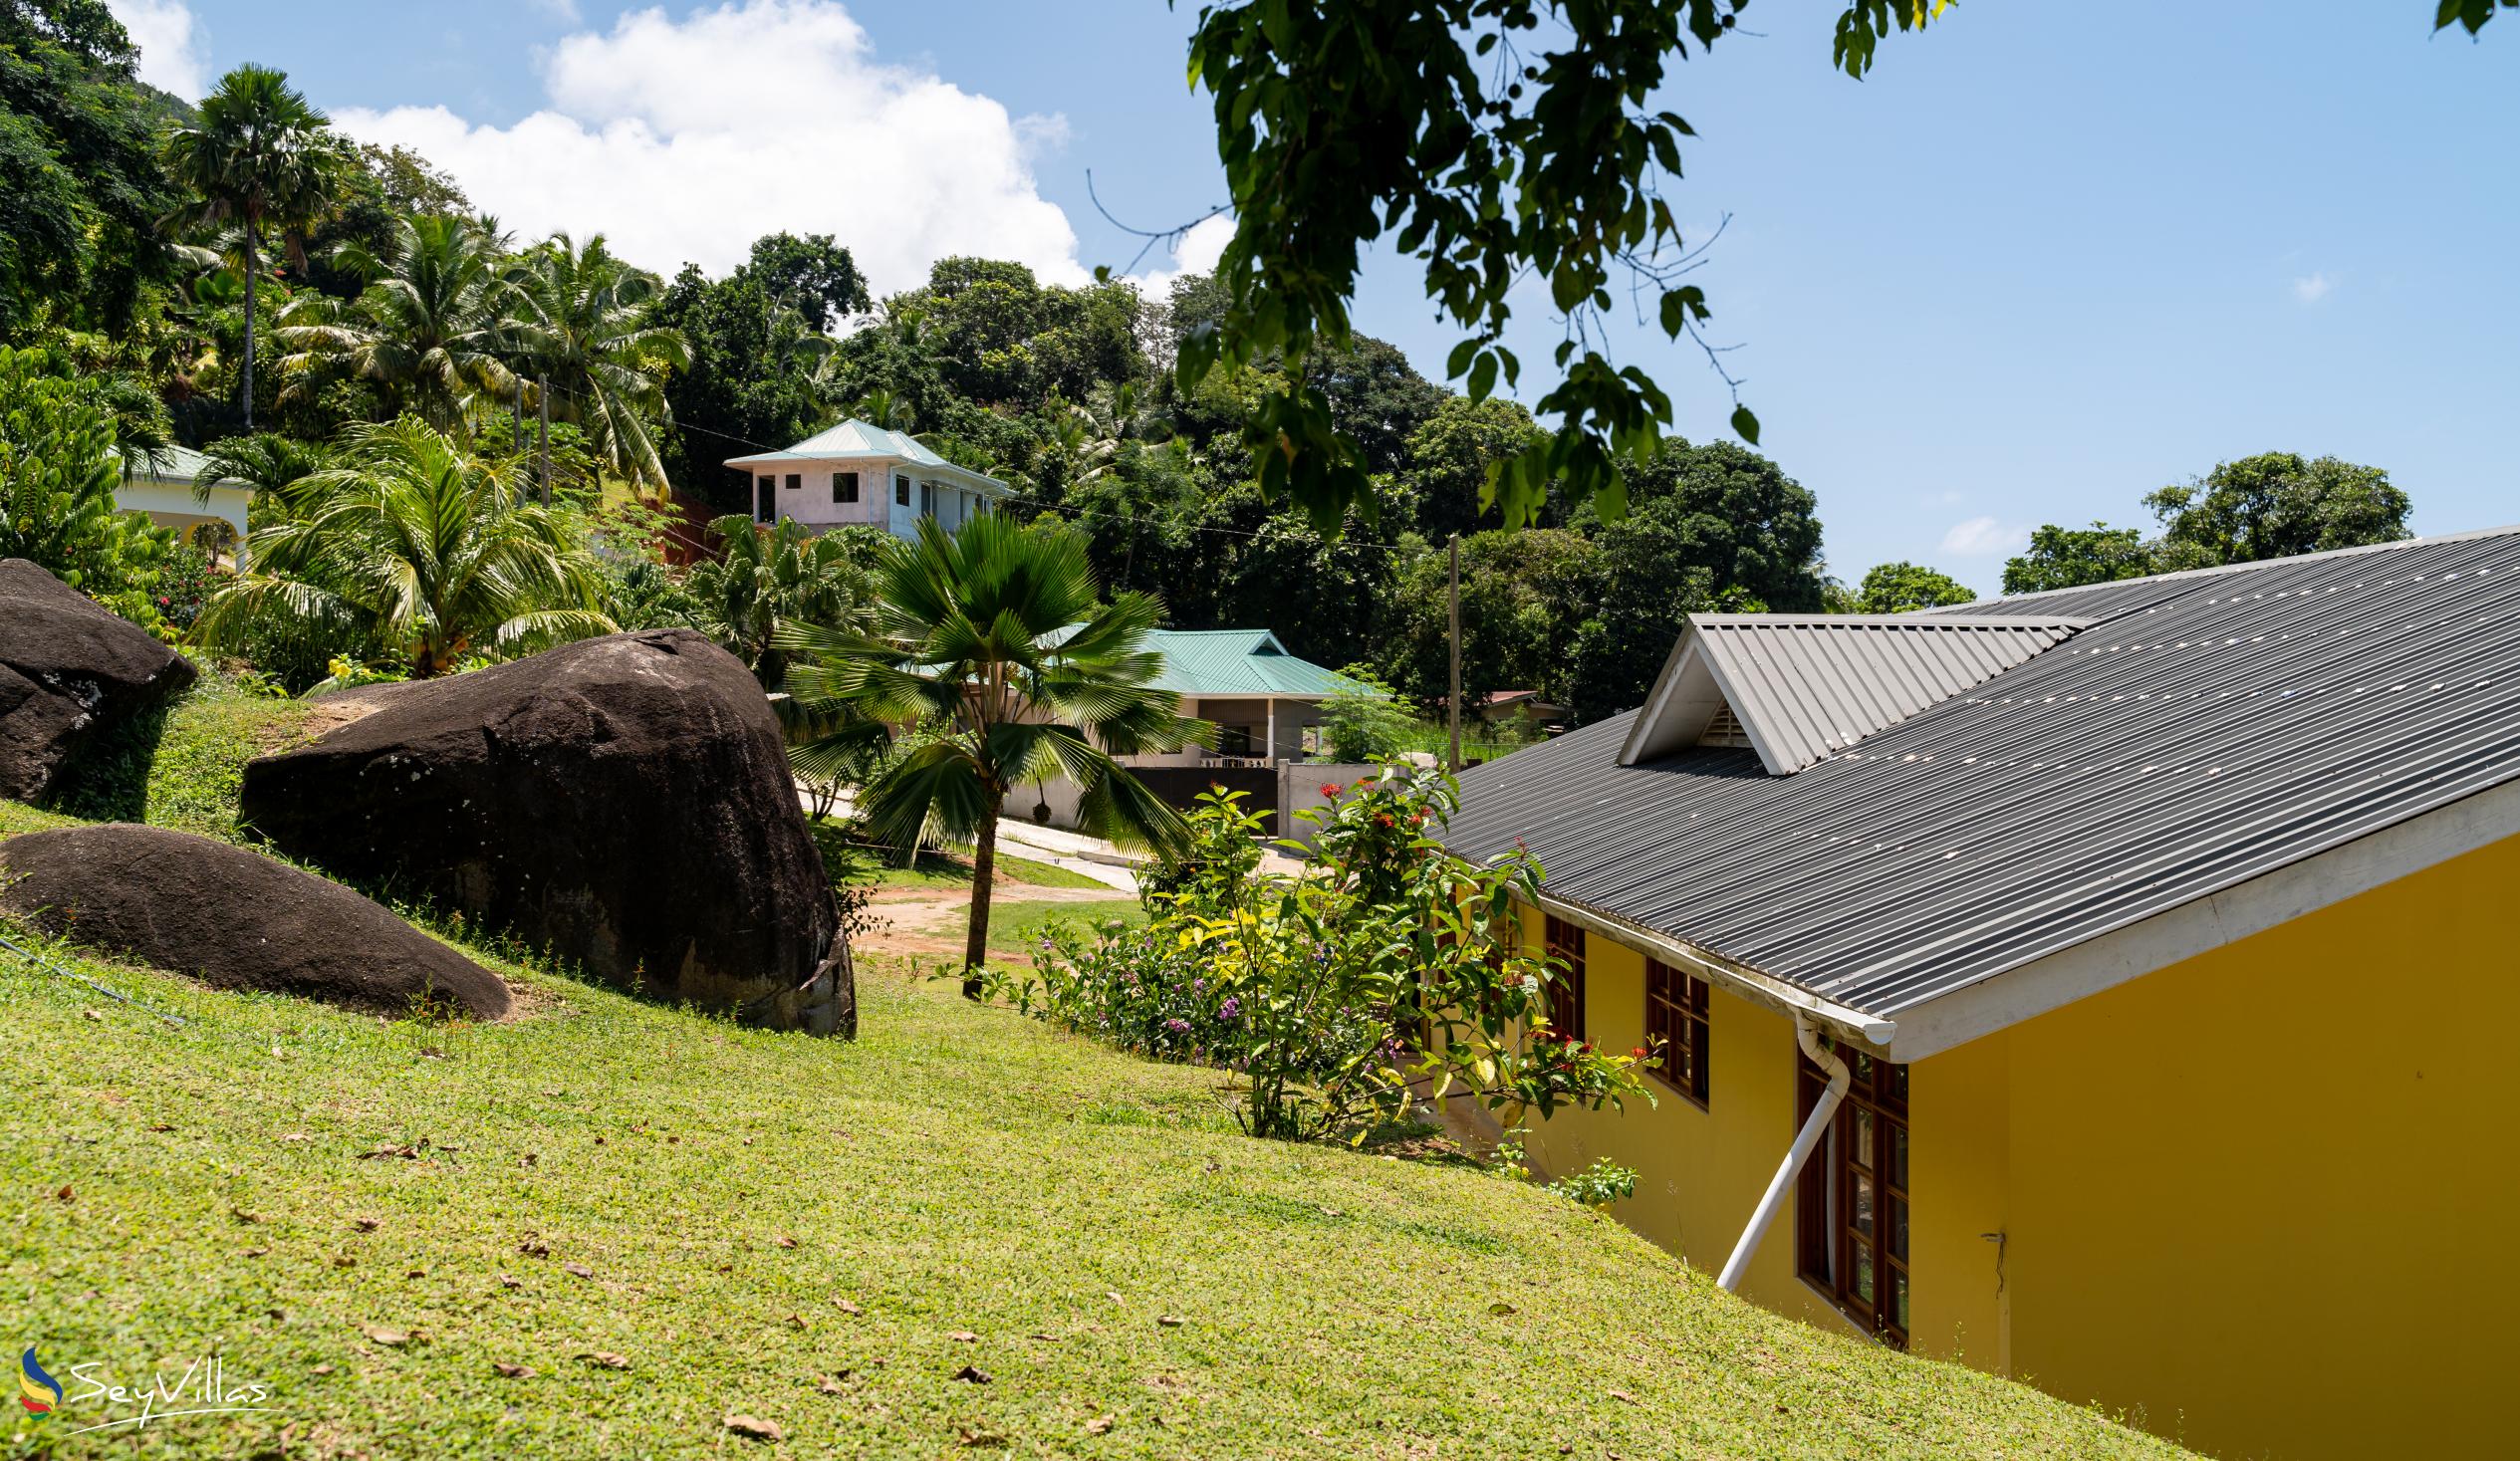 Foto 13: Maison Marikel - Aussenbereich - Mahé (Seychellen)